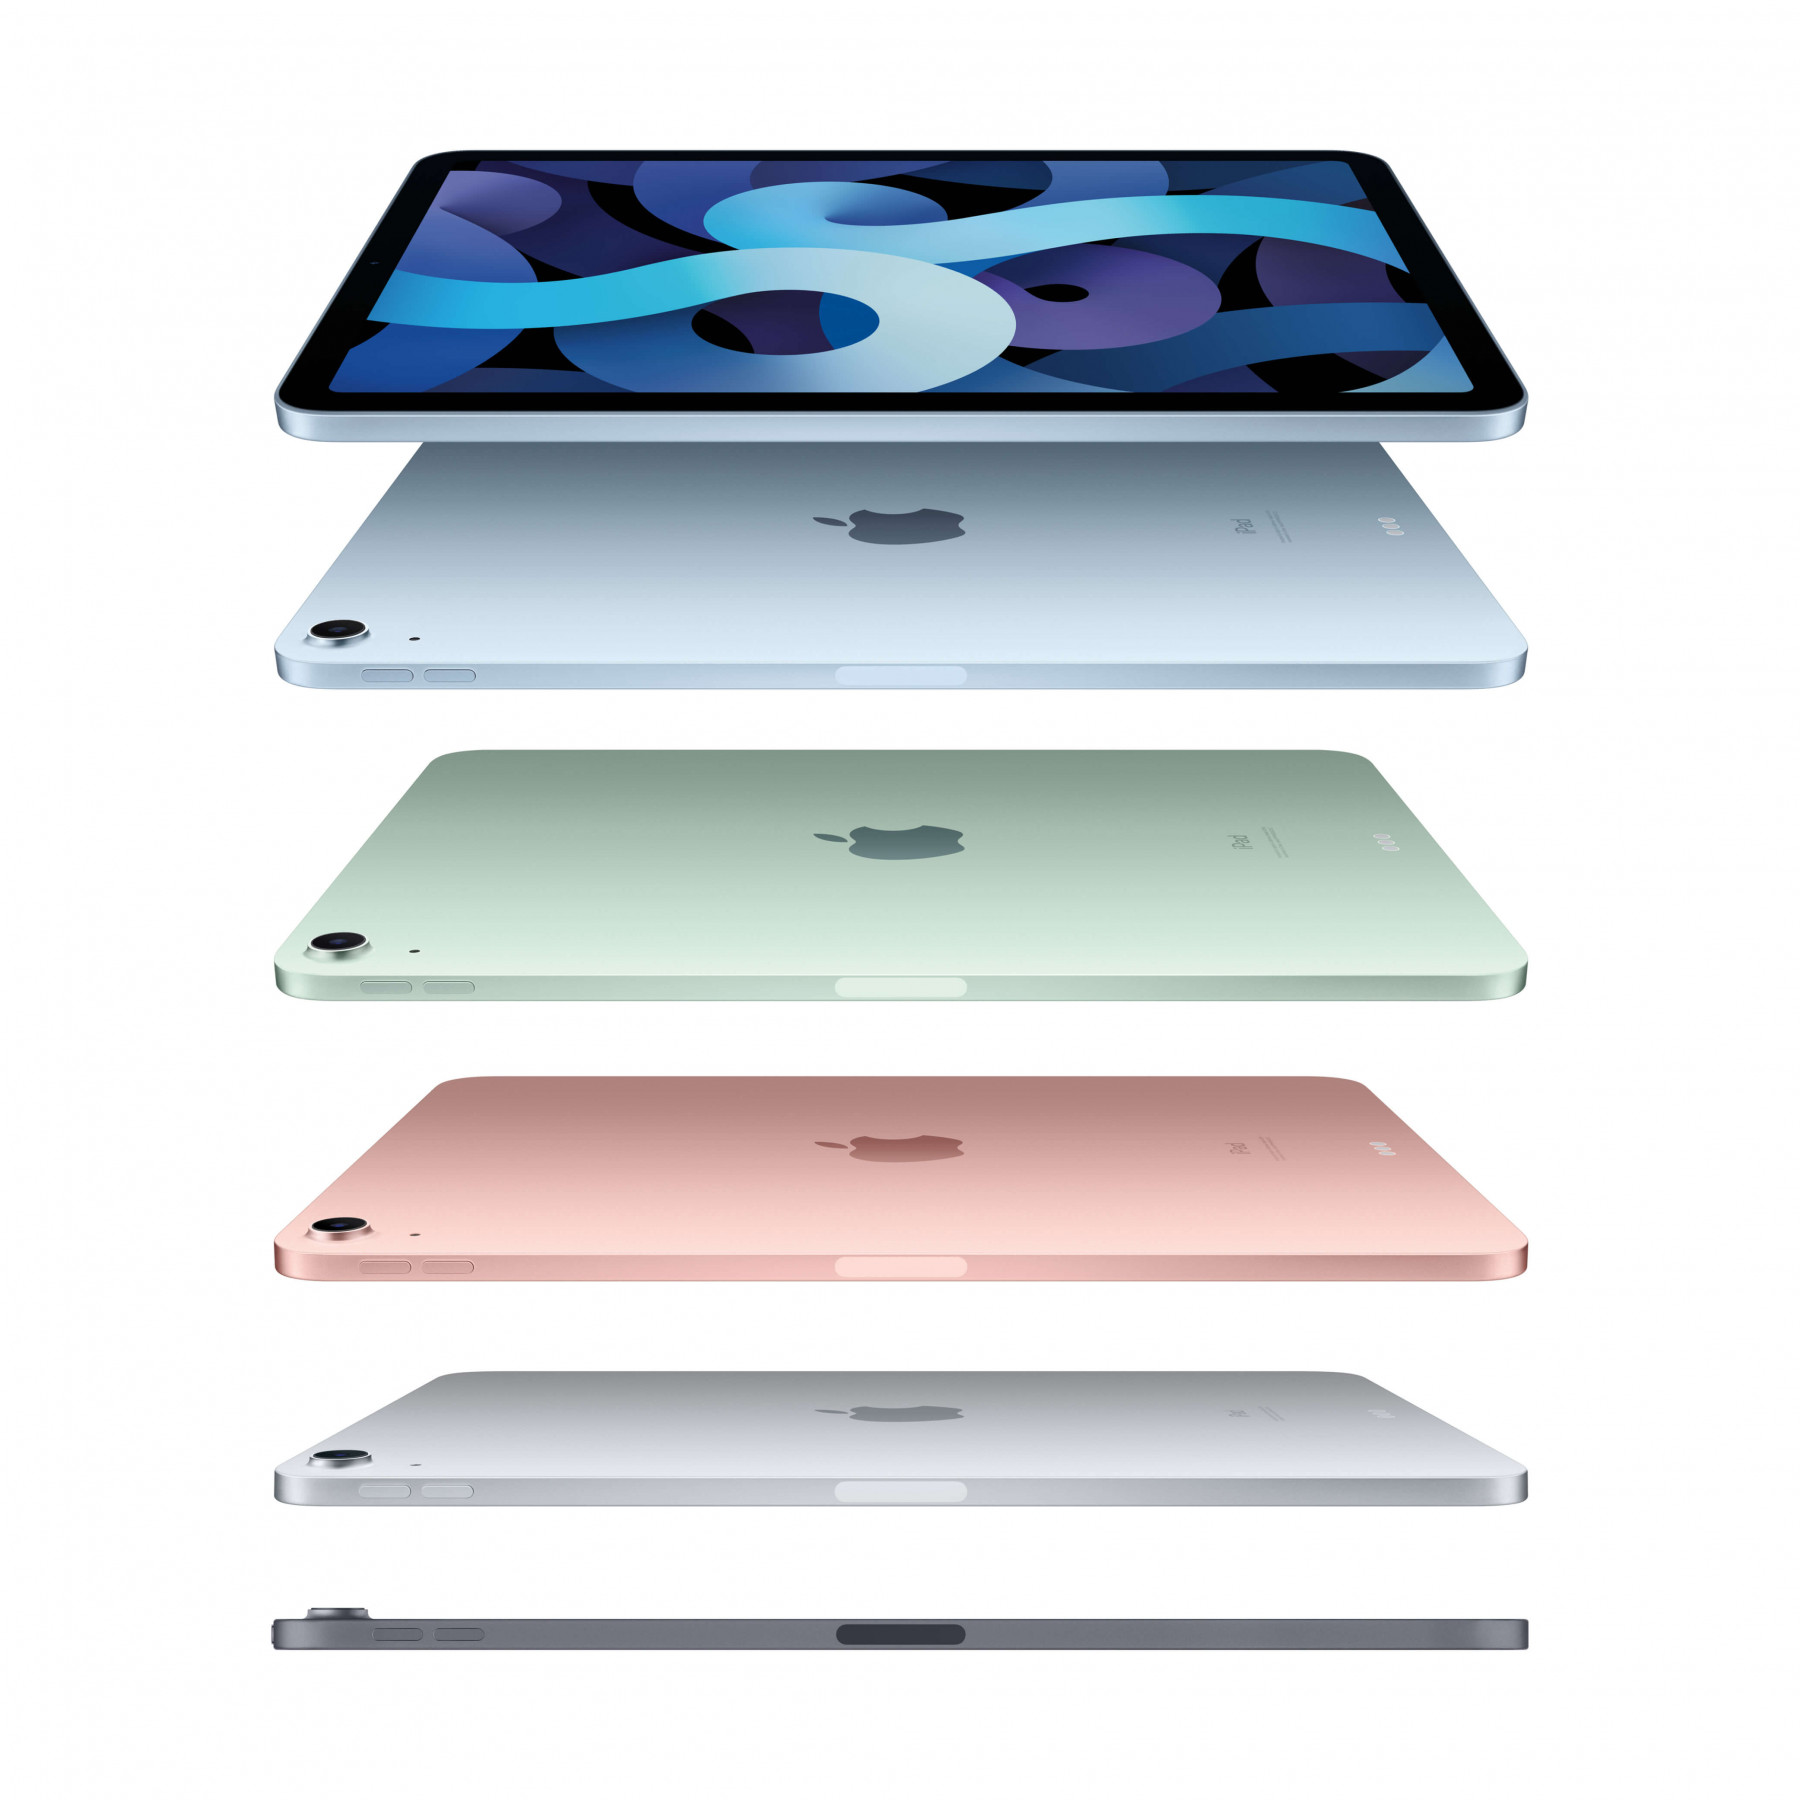 Refurbished iPad Air tweedehands kopen iUsed